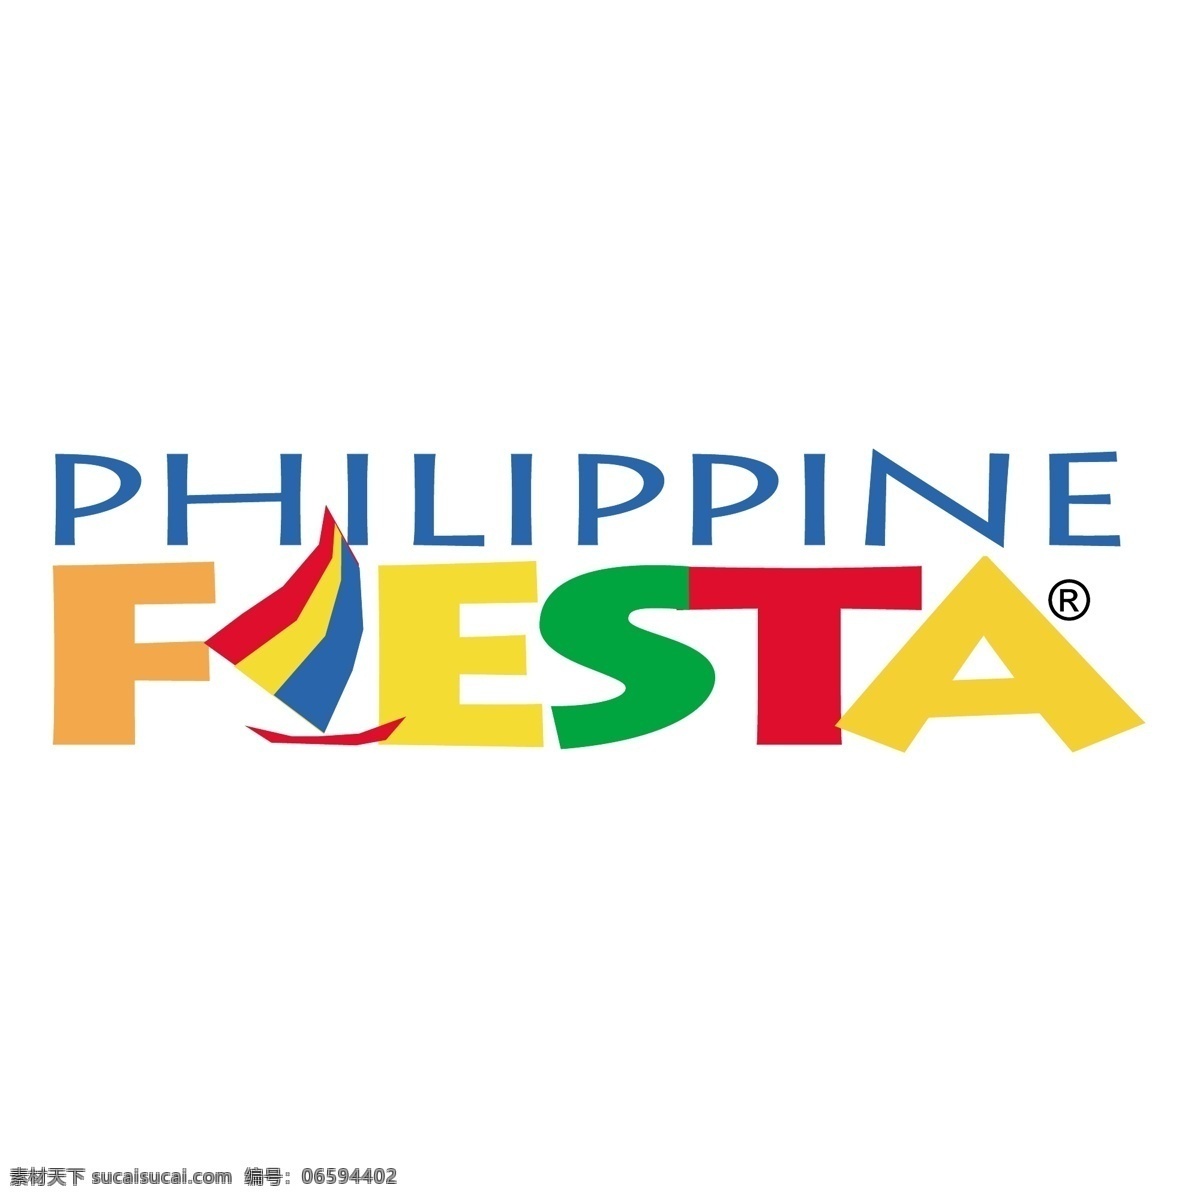 菲律宾 菲律宾嘉年华 嘉年华 自由嘉年华 艺术 免费 矢量 矢量设计 向量 白色